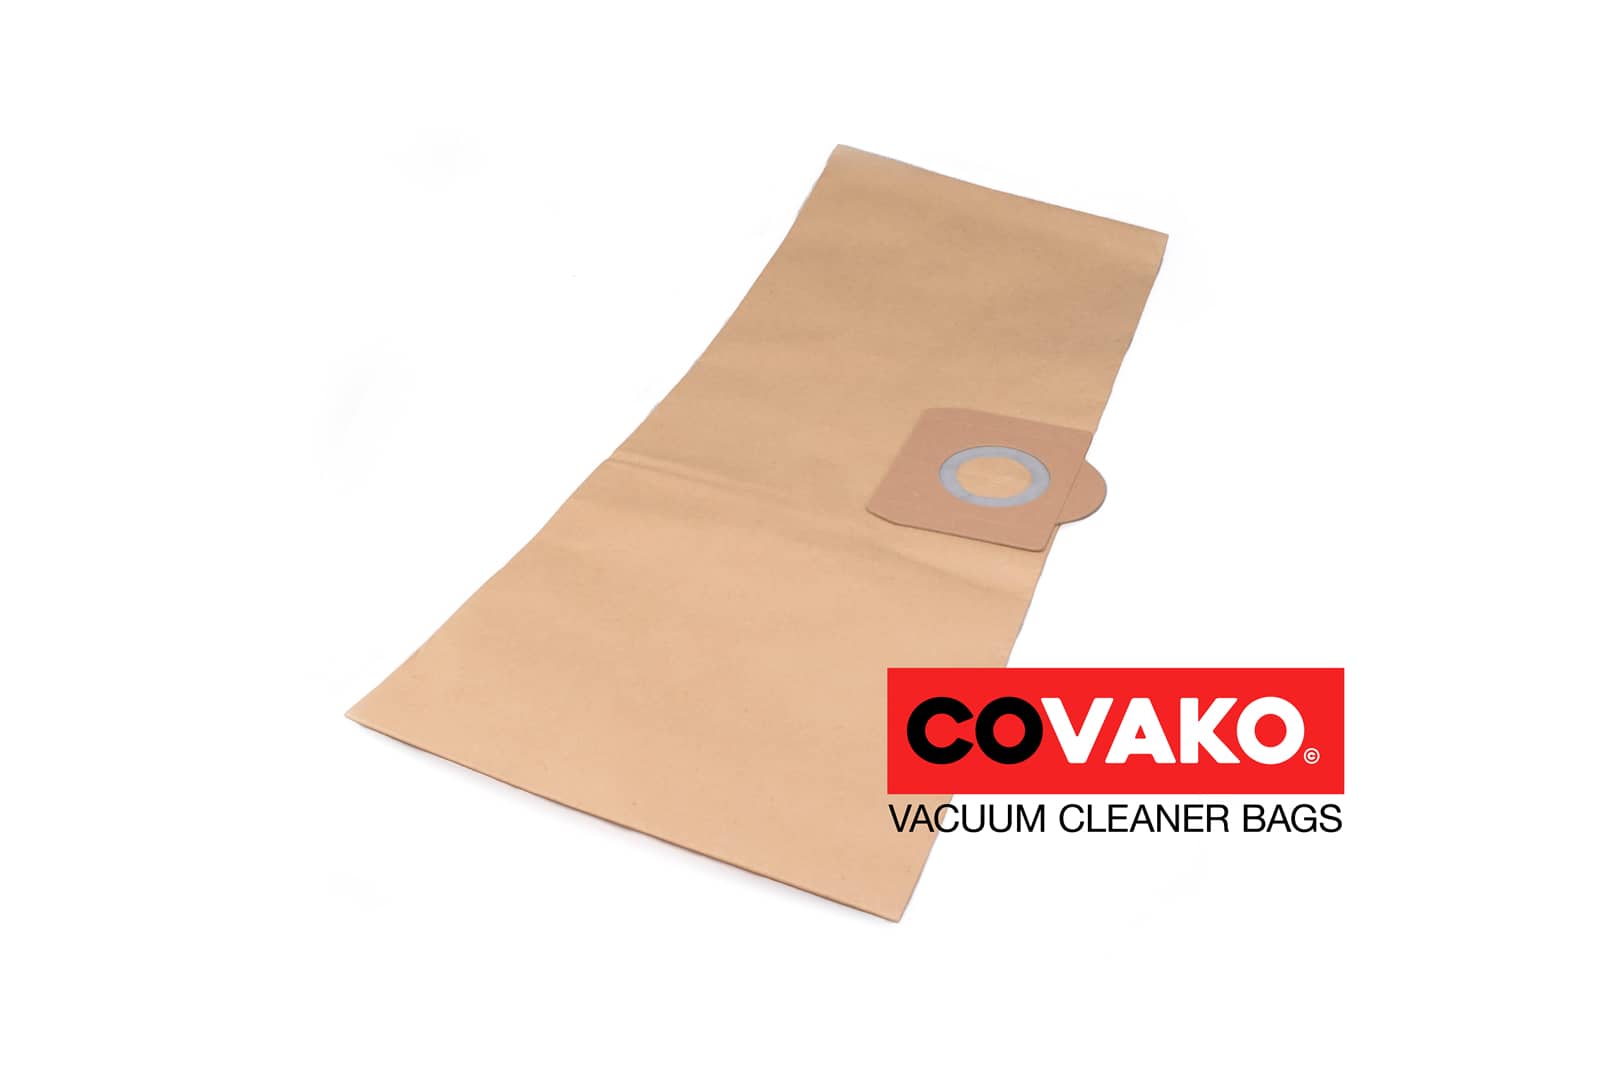 AquaVac Delta ES / Paper - AquaVac vacuum cleaner bags